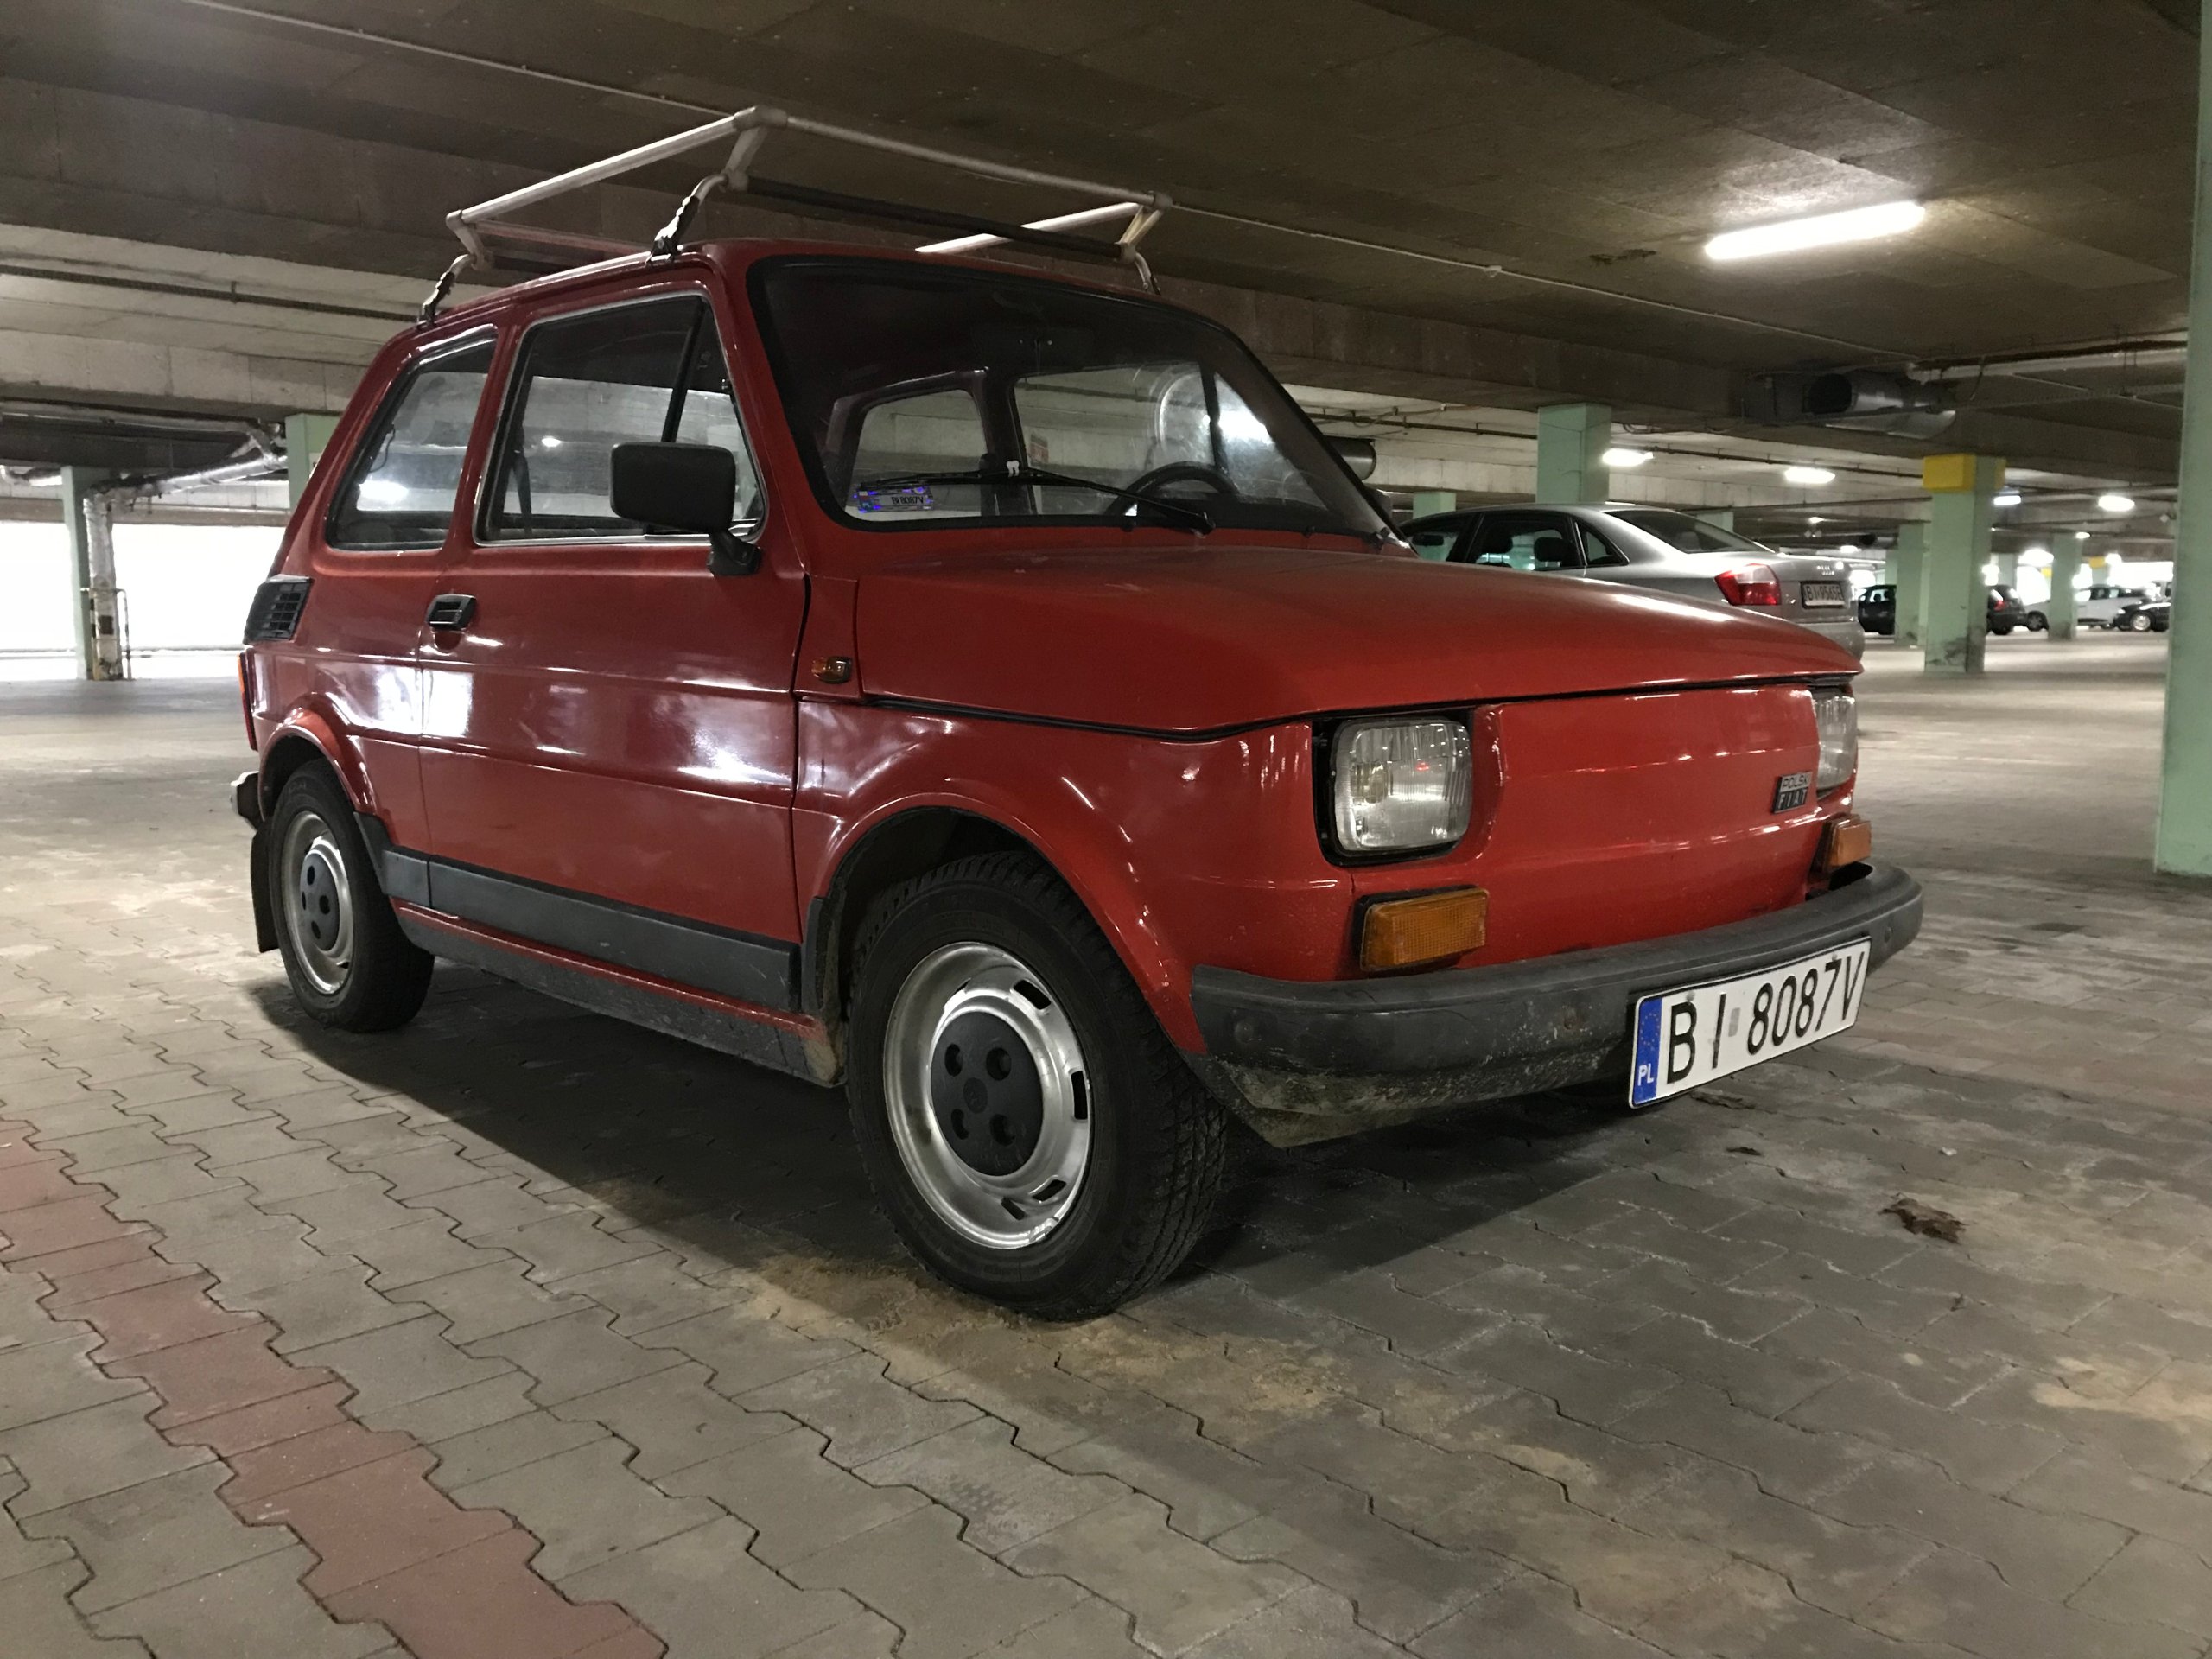 Mały Fiat 126p polski Fiat fsm maluch 7169694525